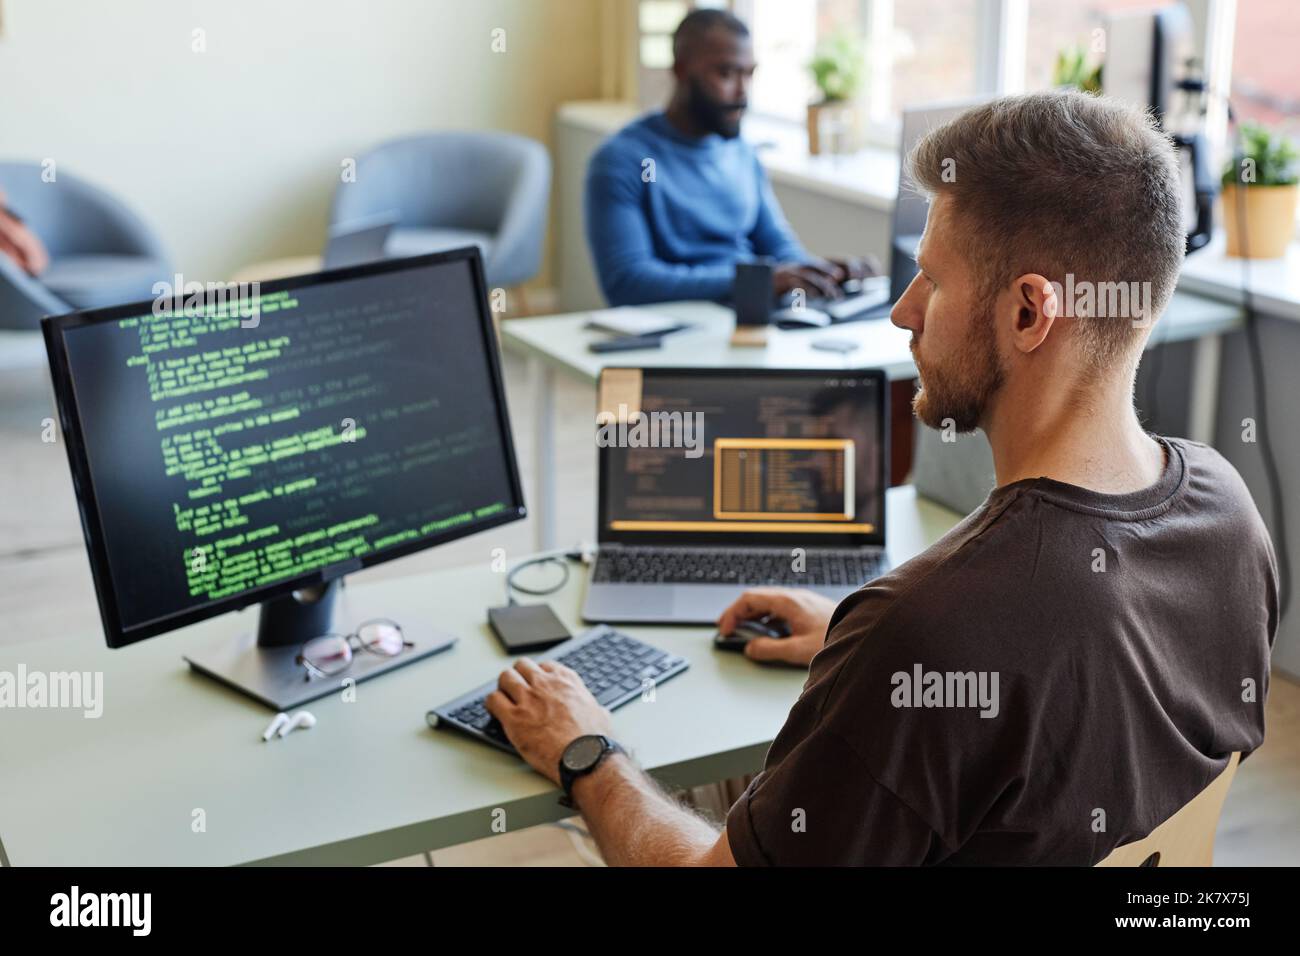 Ritratto del software engineer che scrive codice sul luogo di lavoro in ufficio con più dispositivi Foto Stock